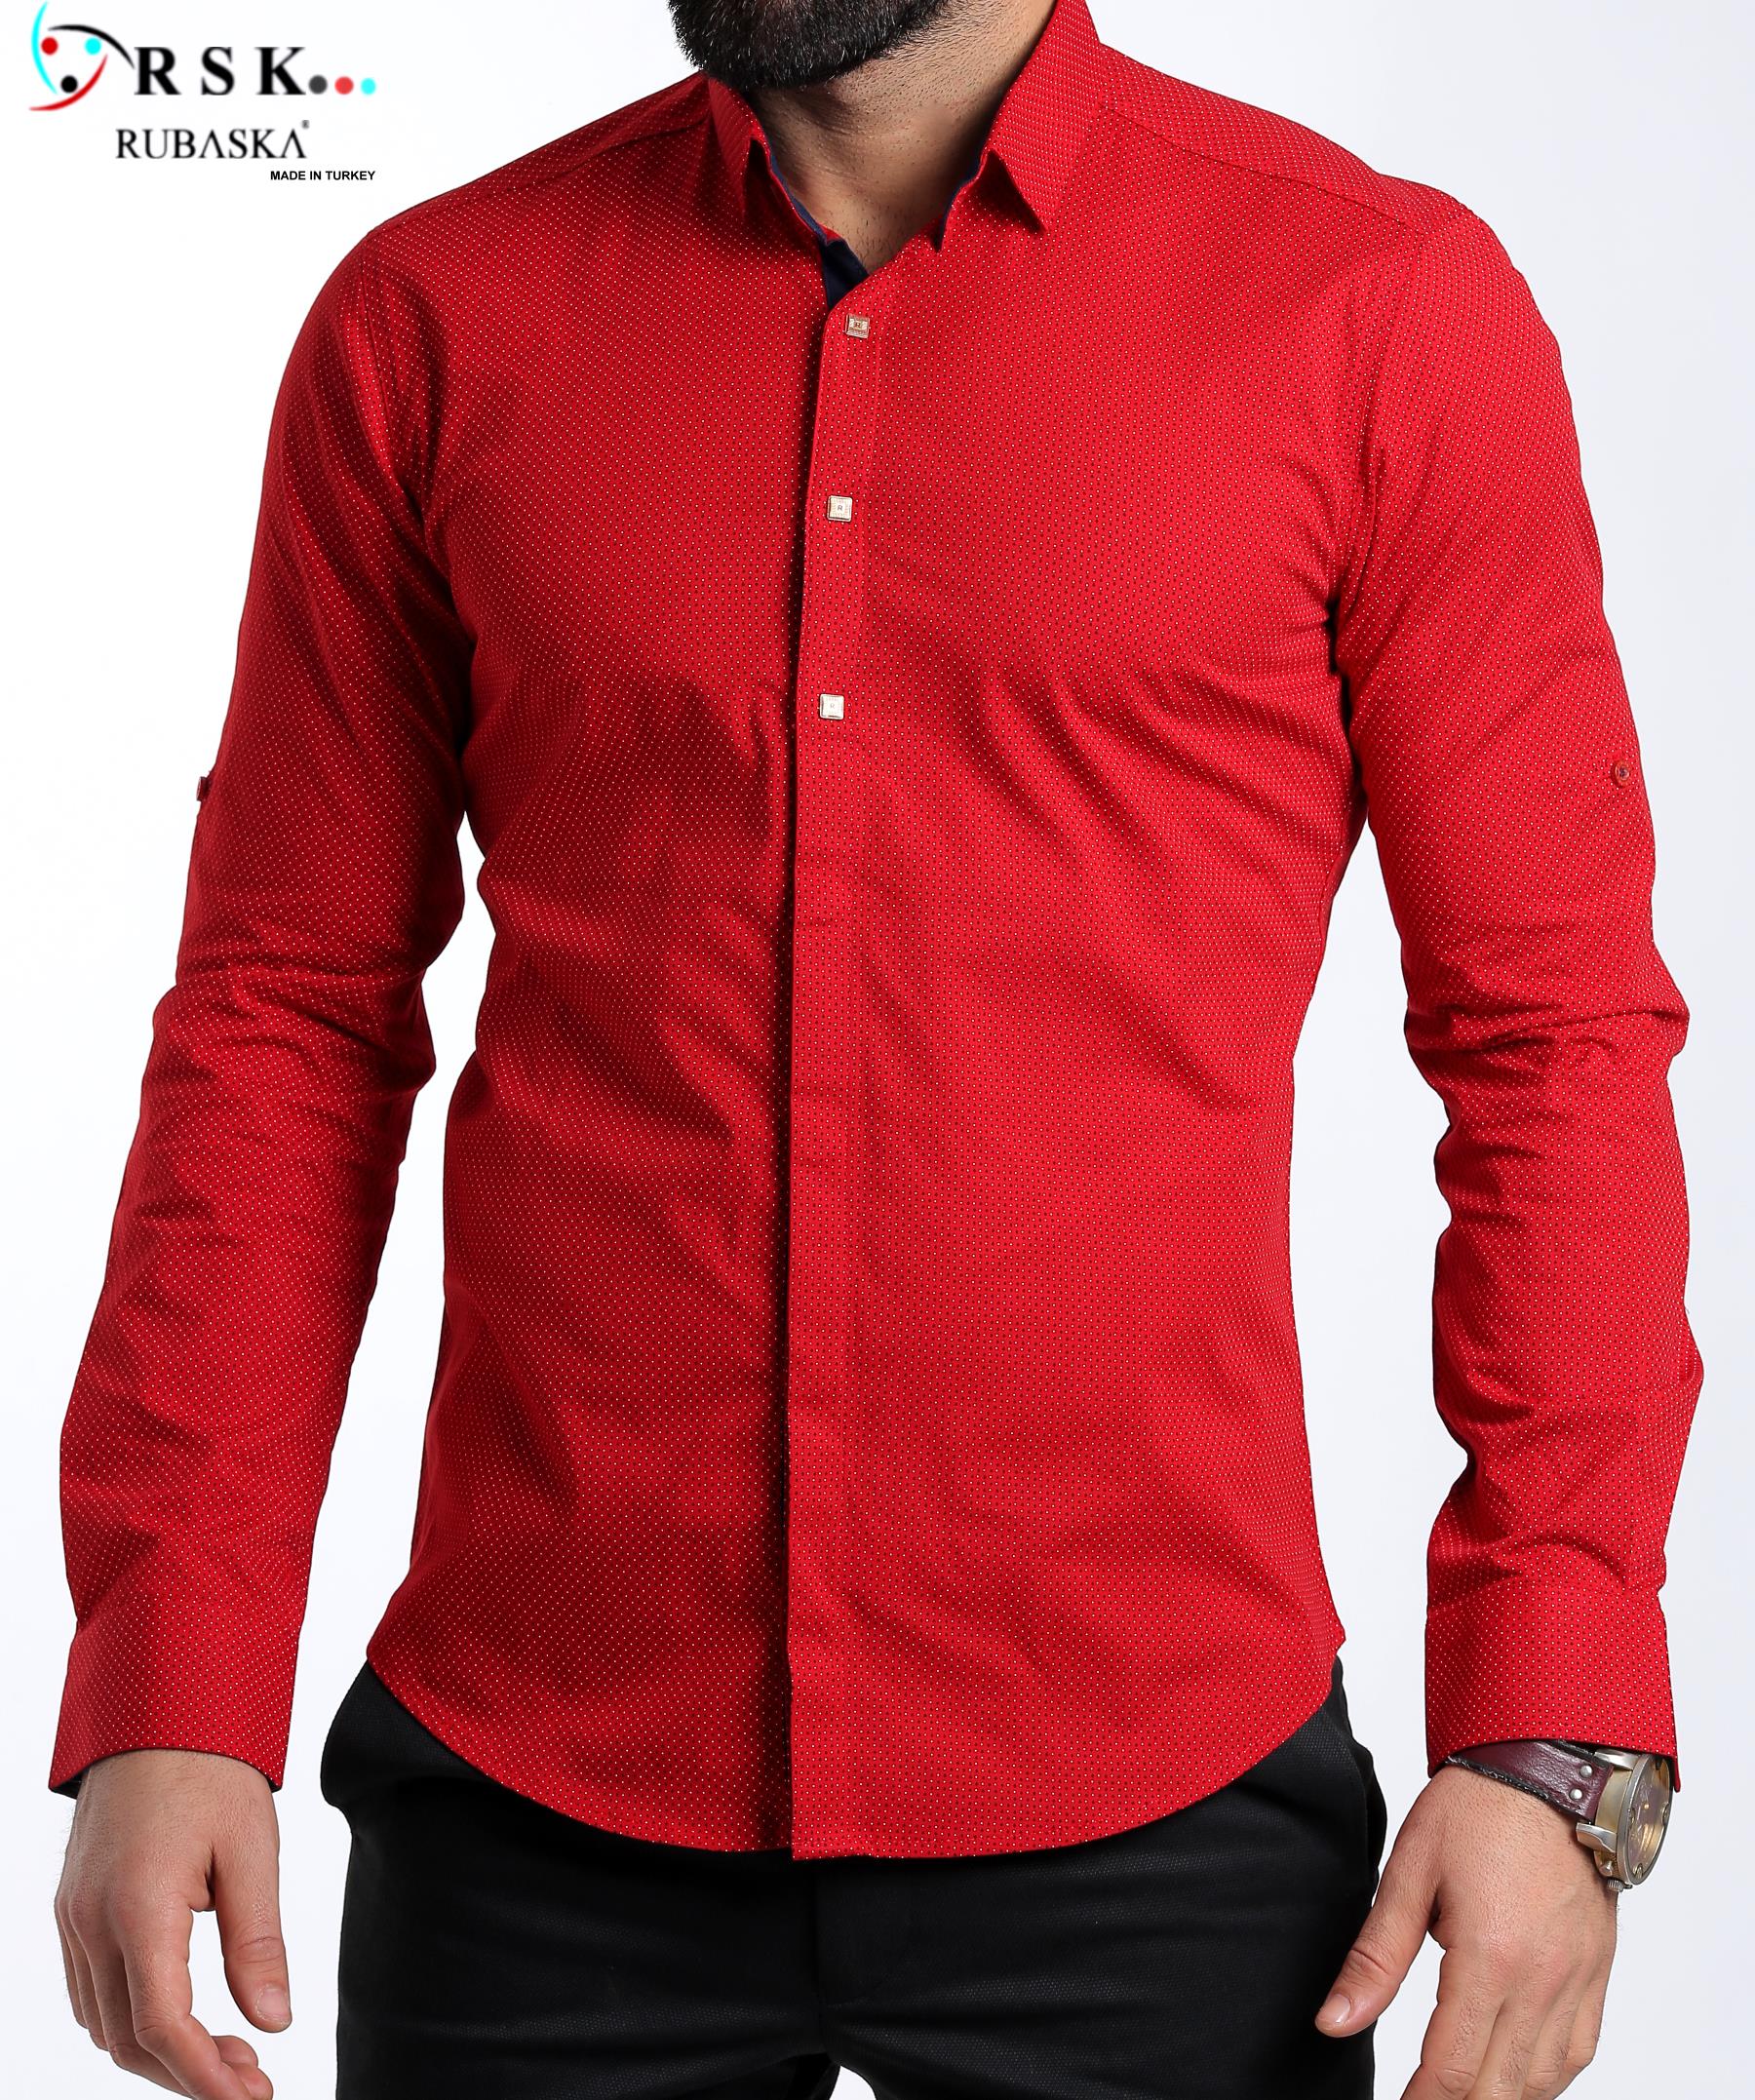 Мужская рубашка 52 размер. Рубашка мужская красная. Ярко красная рубашка мужская. Красная рубаха мужская. Рубашка мужская с длинным рукавом красная.